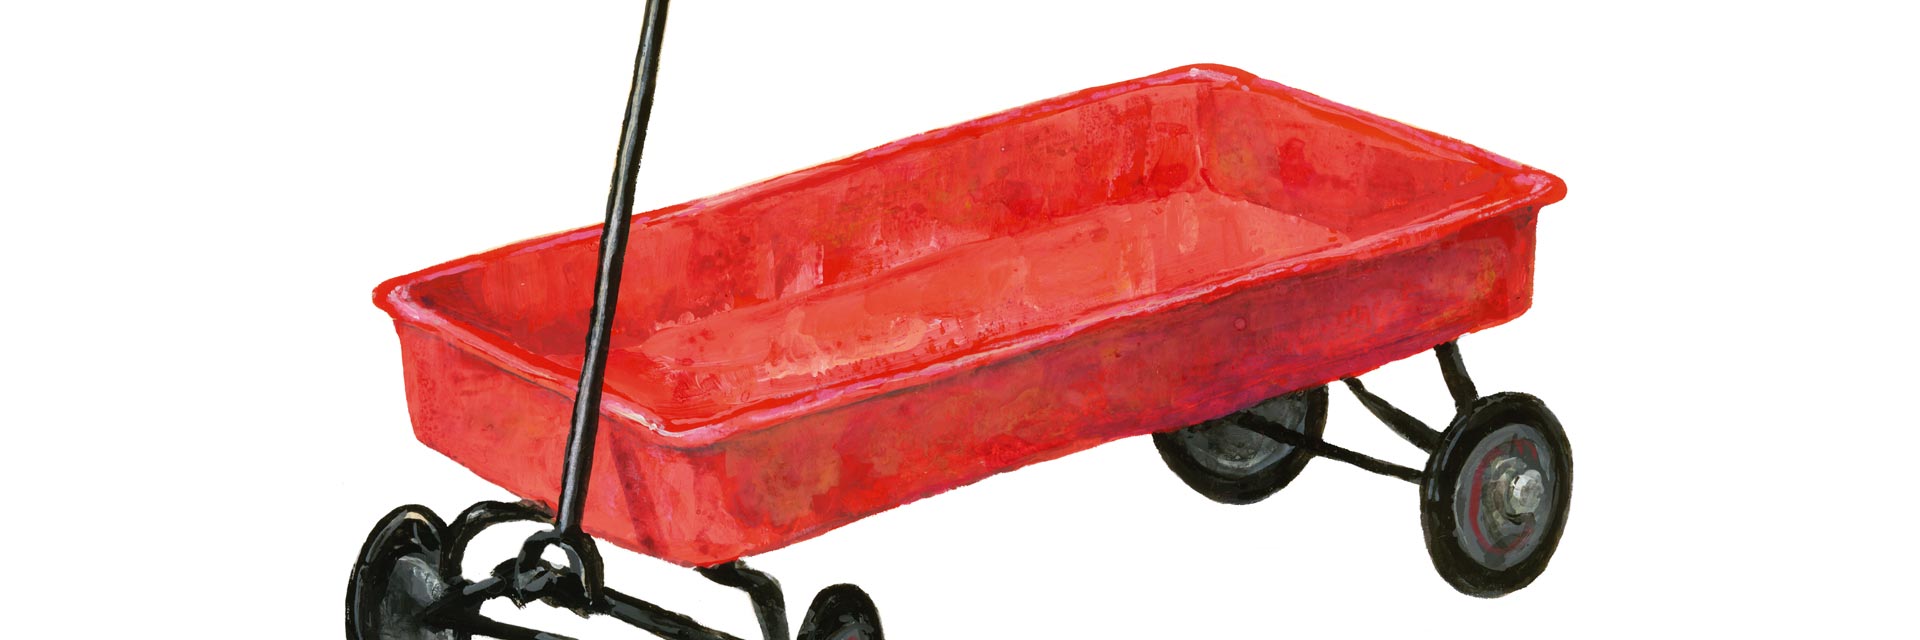 Little Red Cart